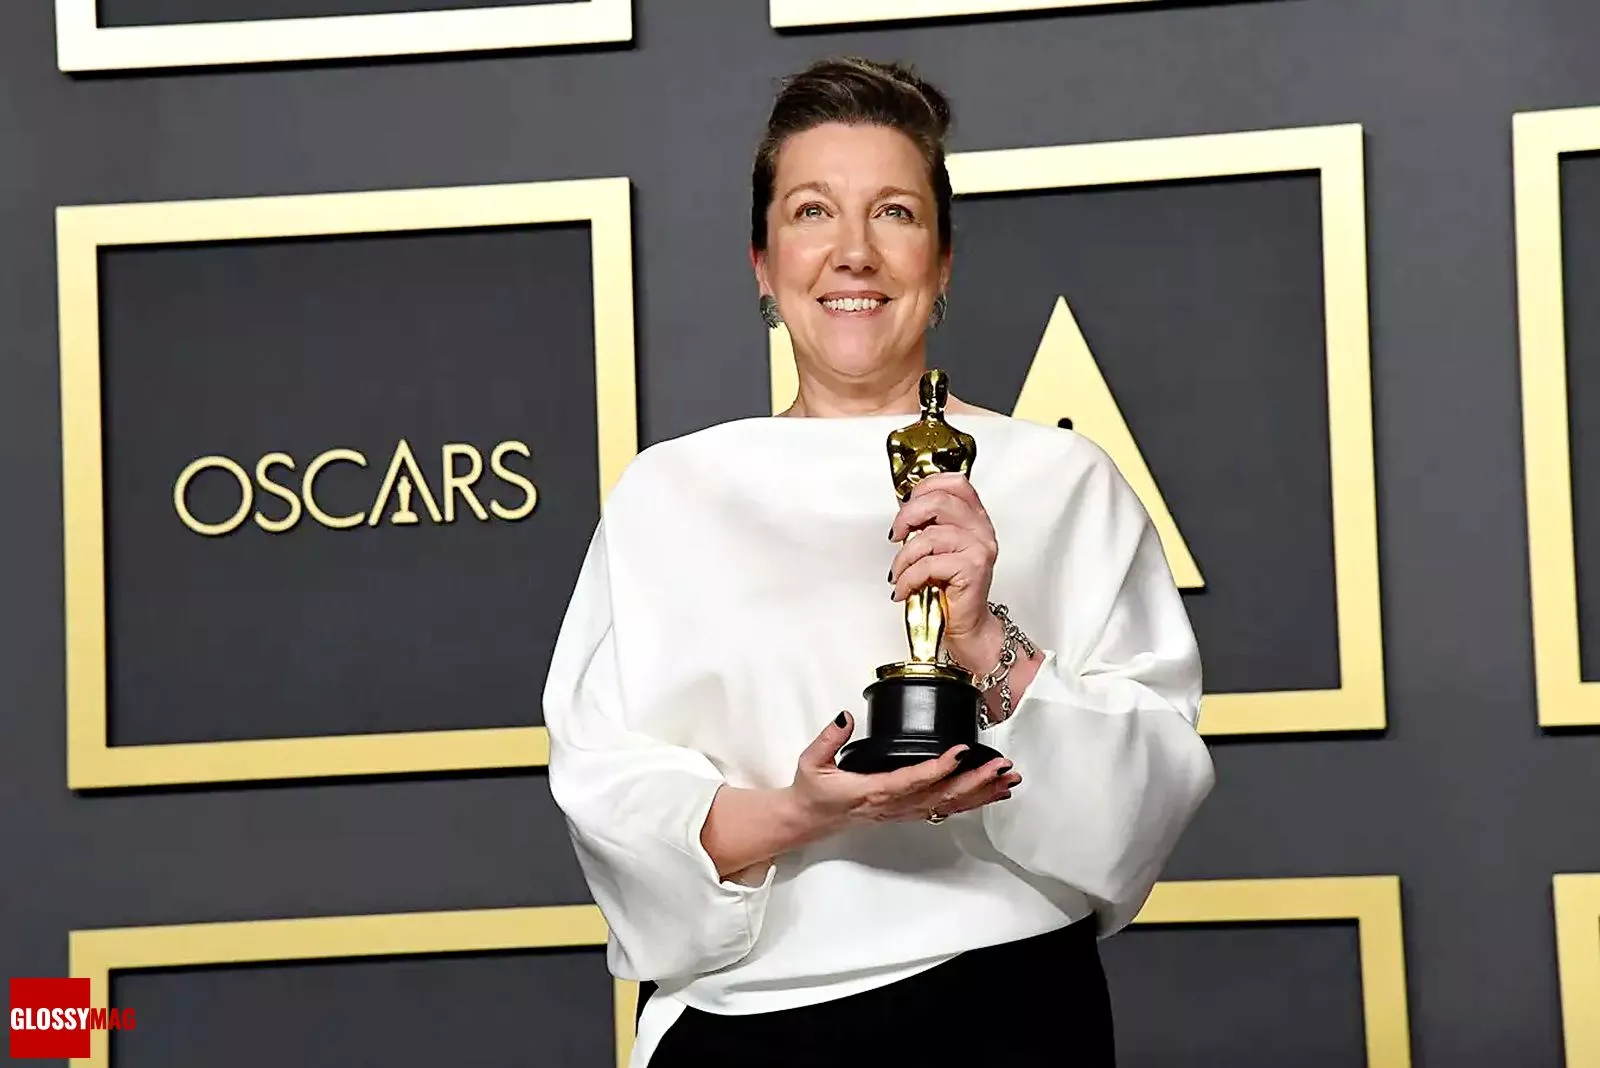 Жаклин Дюрран — лауреат 92-й церемонии вручения премии «Оскар» за фильм «Маленькие женщины», 9 февраля 2020 г.